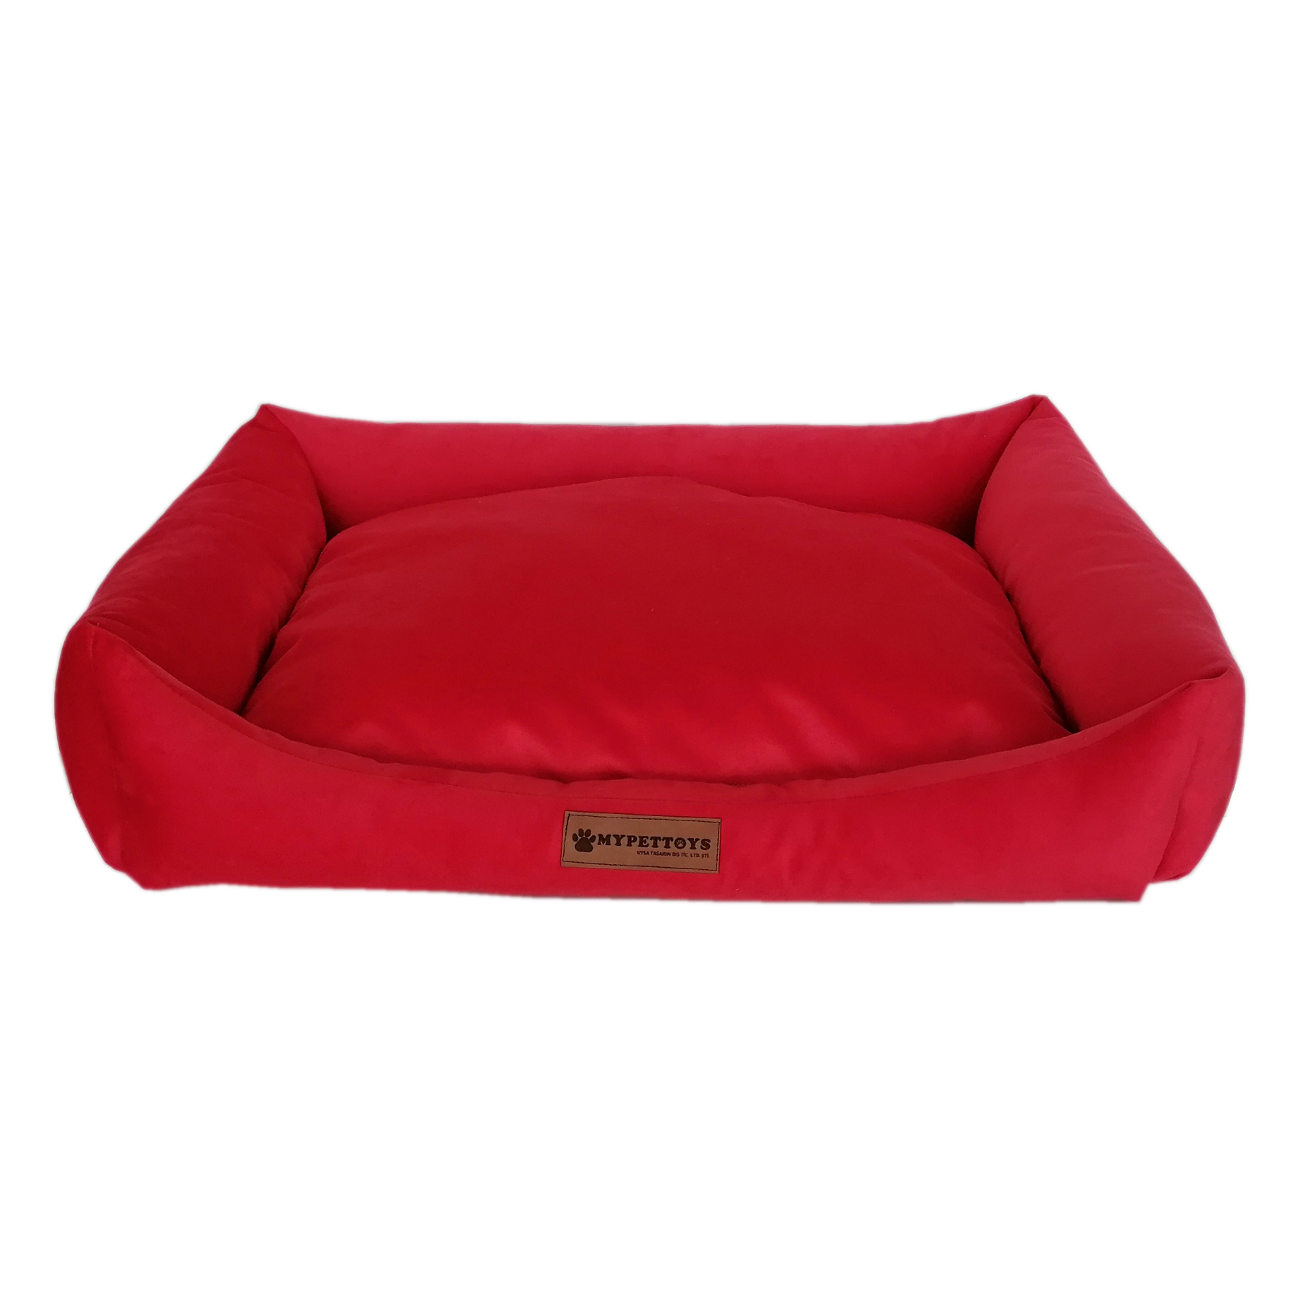 Tay Tüyü Yumuşak Köpek Yatağı Medium Kırmızı 50*60 cm